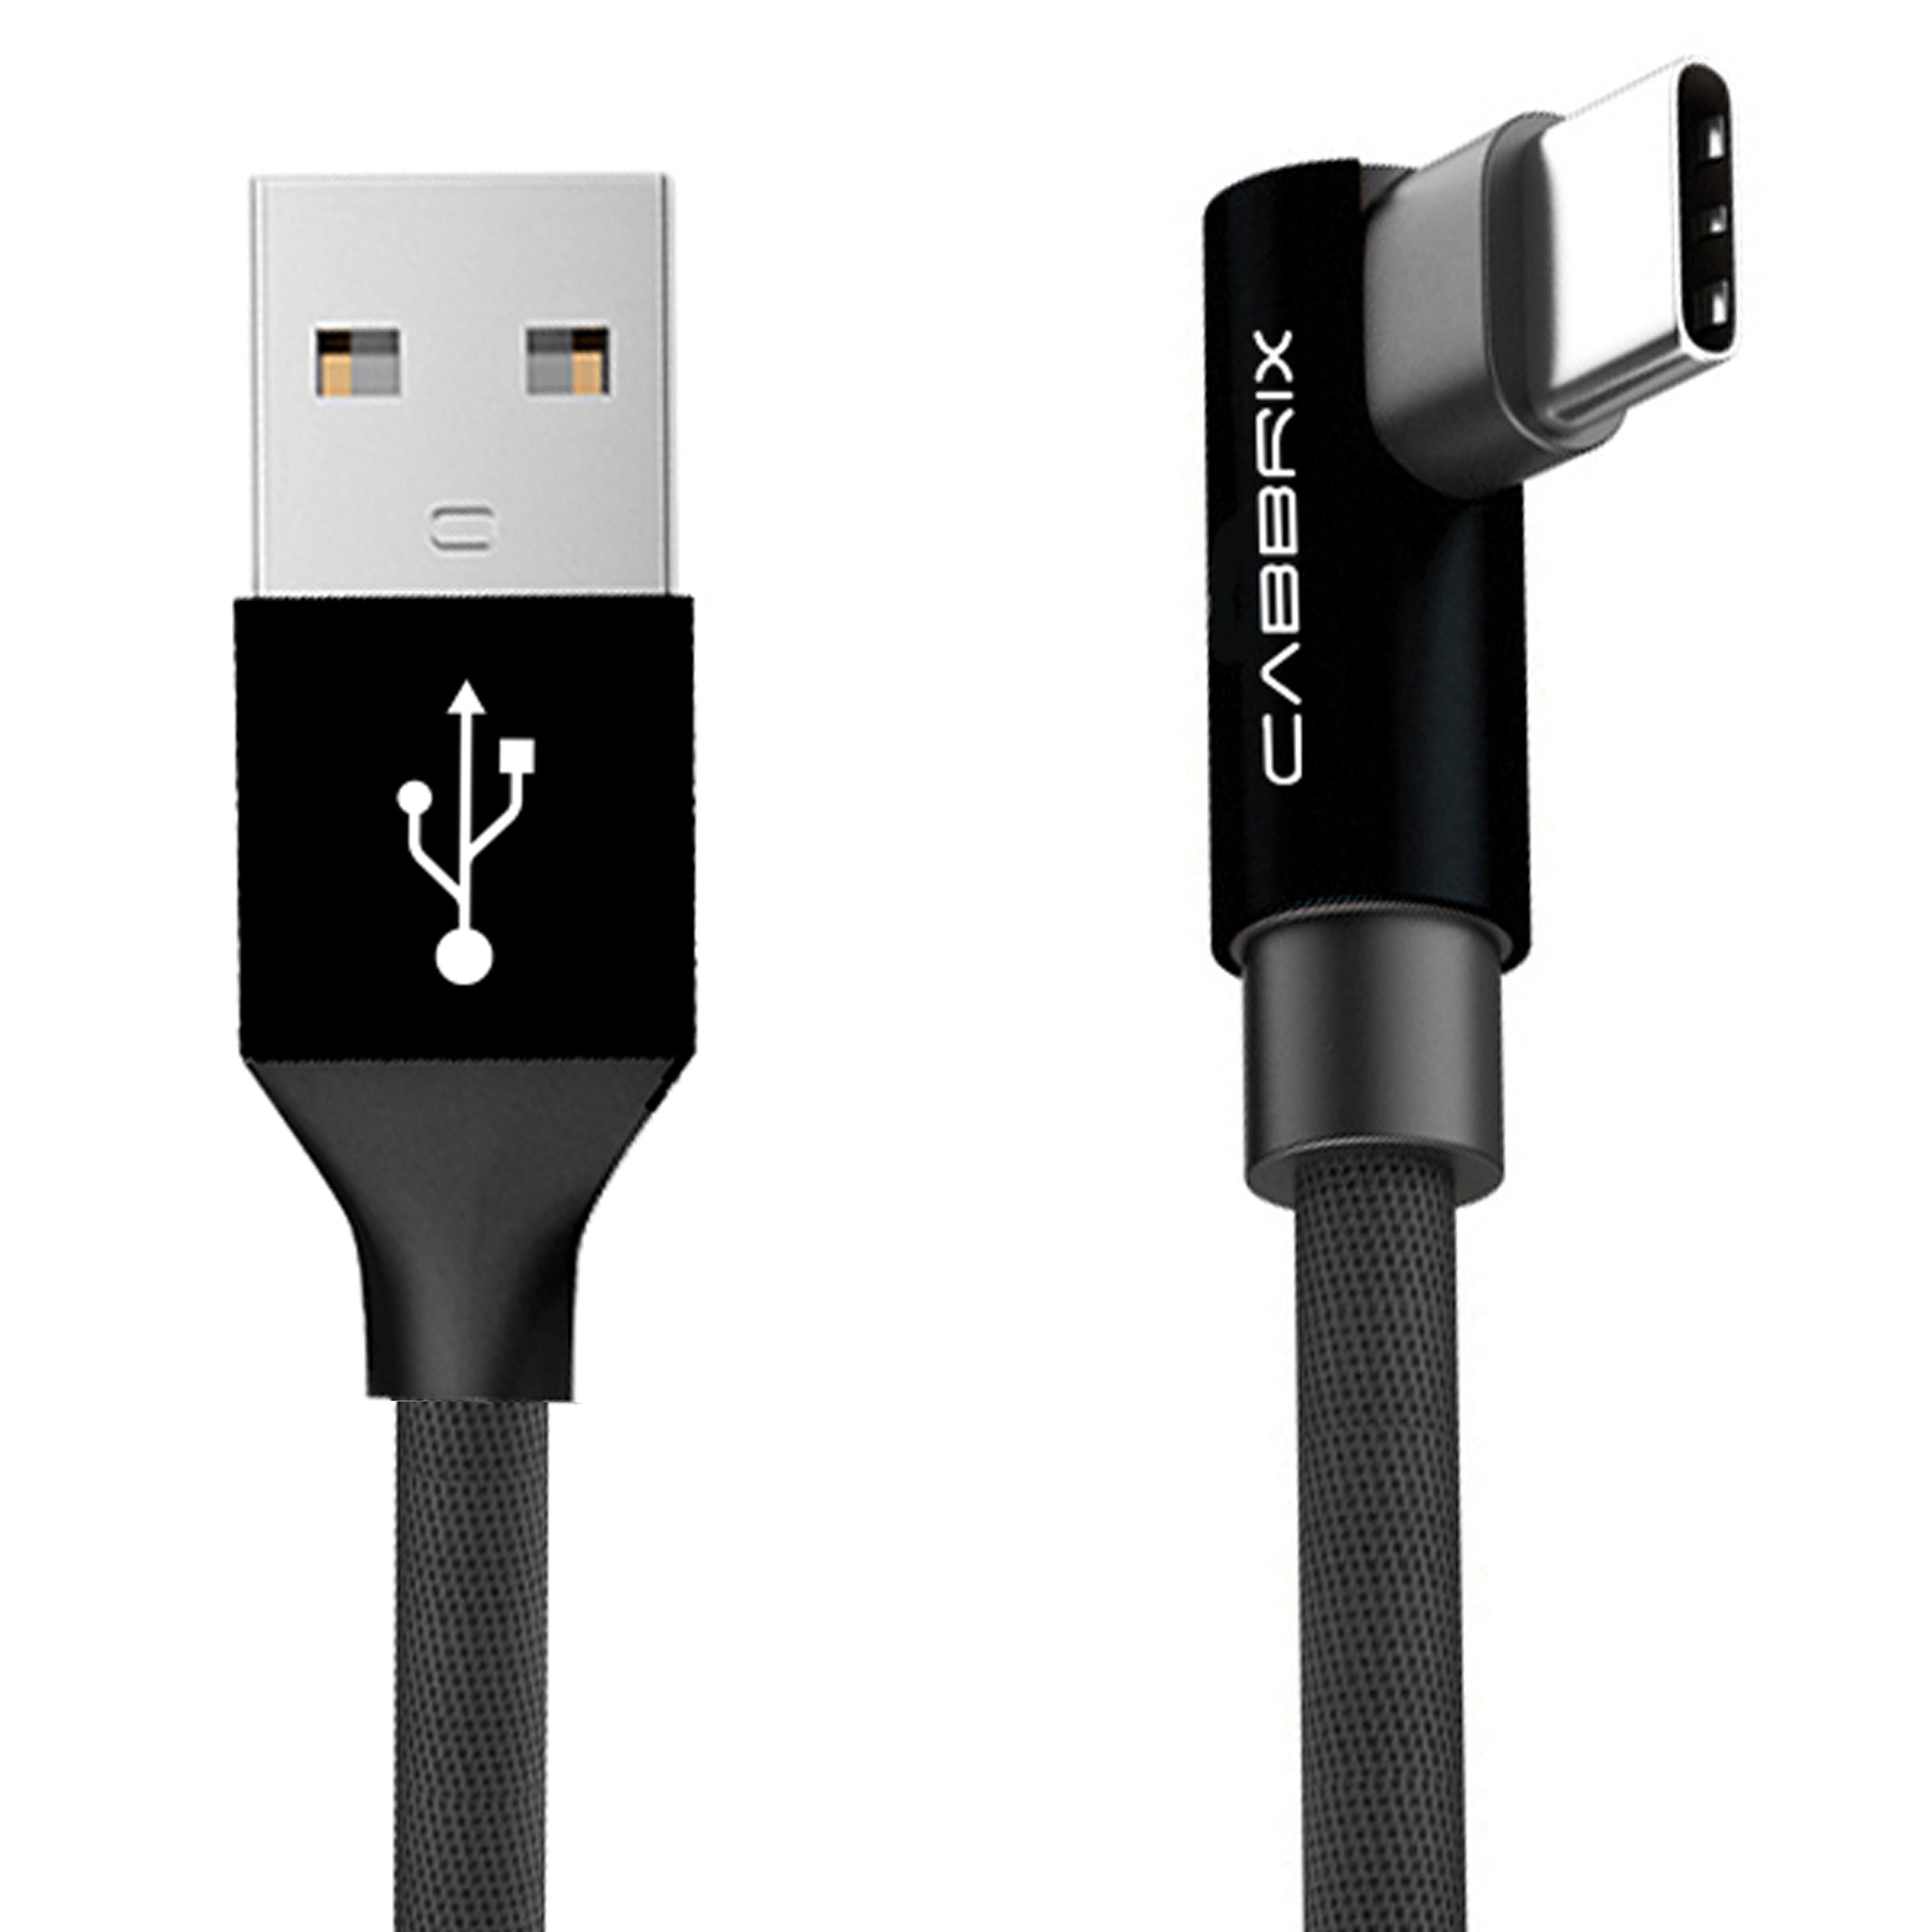 Stabile Flach Geflochten USB Daten Ladekabel für Samsung Galaxy S3 S4 S5 Mini 